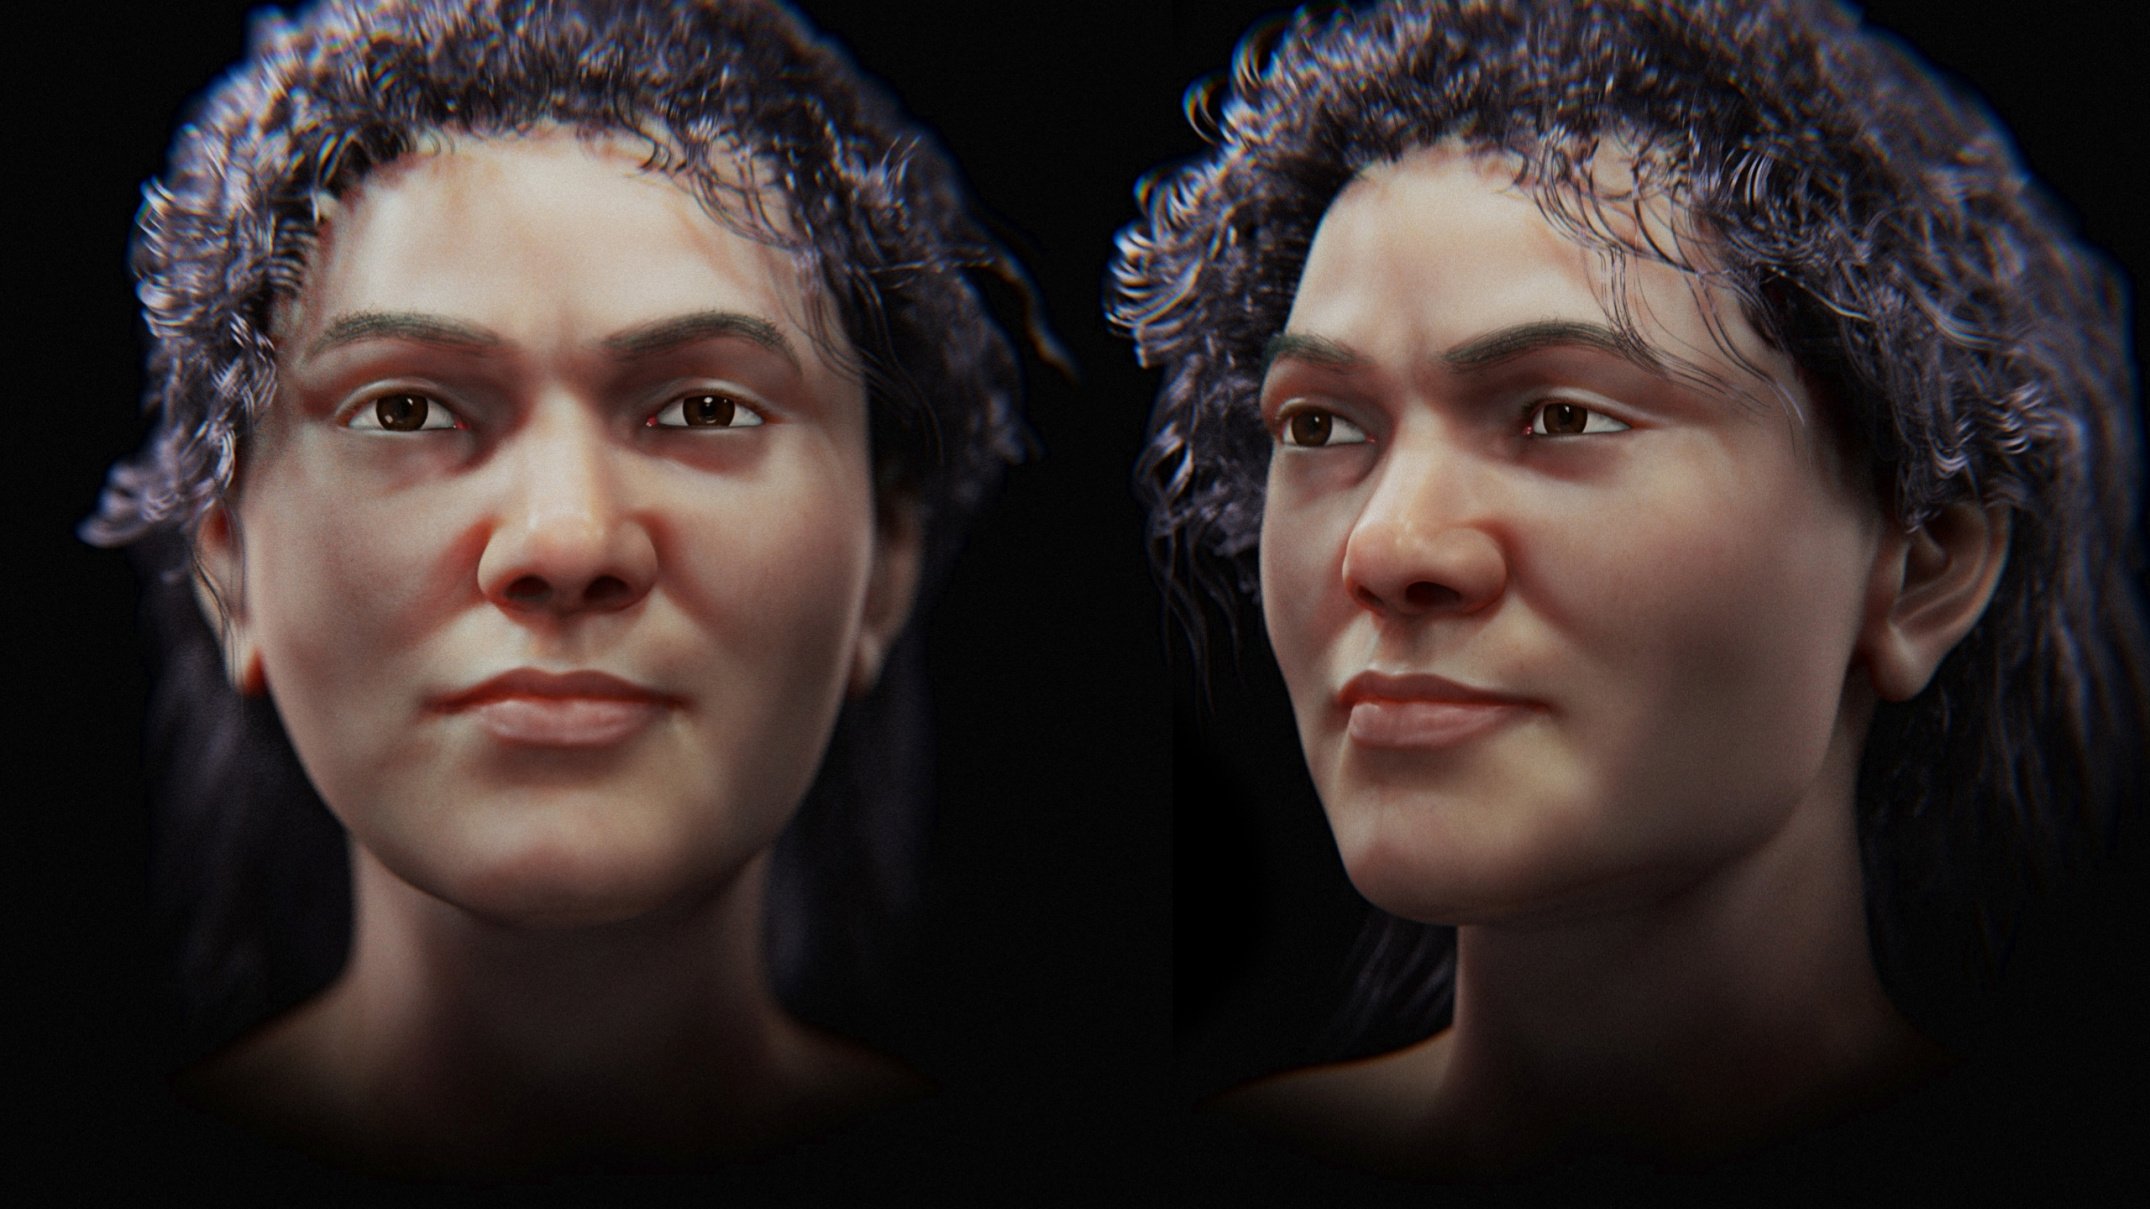 Una aproximación facial de la mujer Zlatý kůň ofrece una idea de cómo pudo haber sido hace 45,000 años.